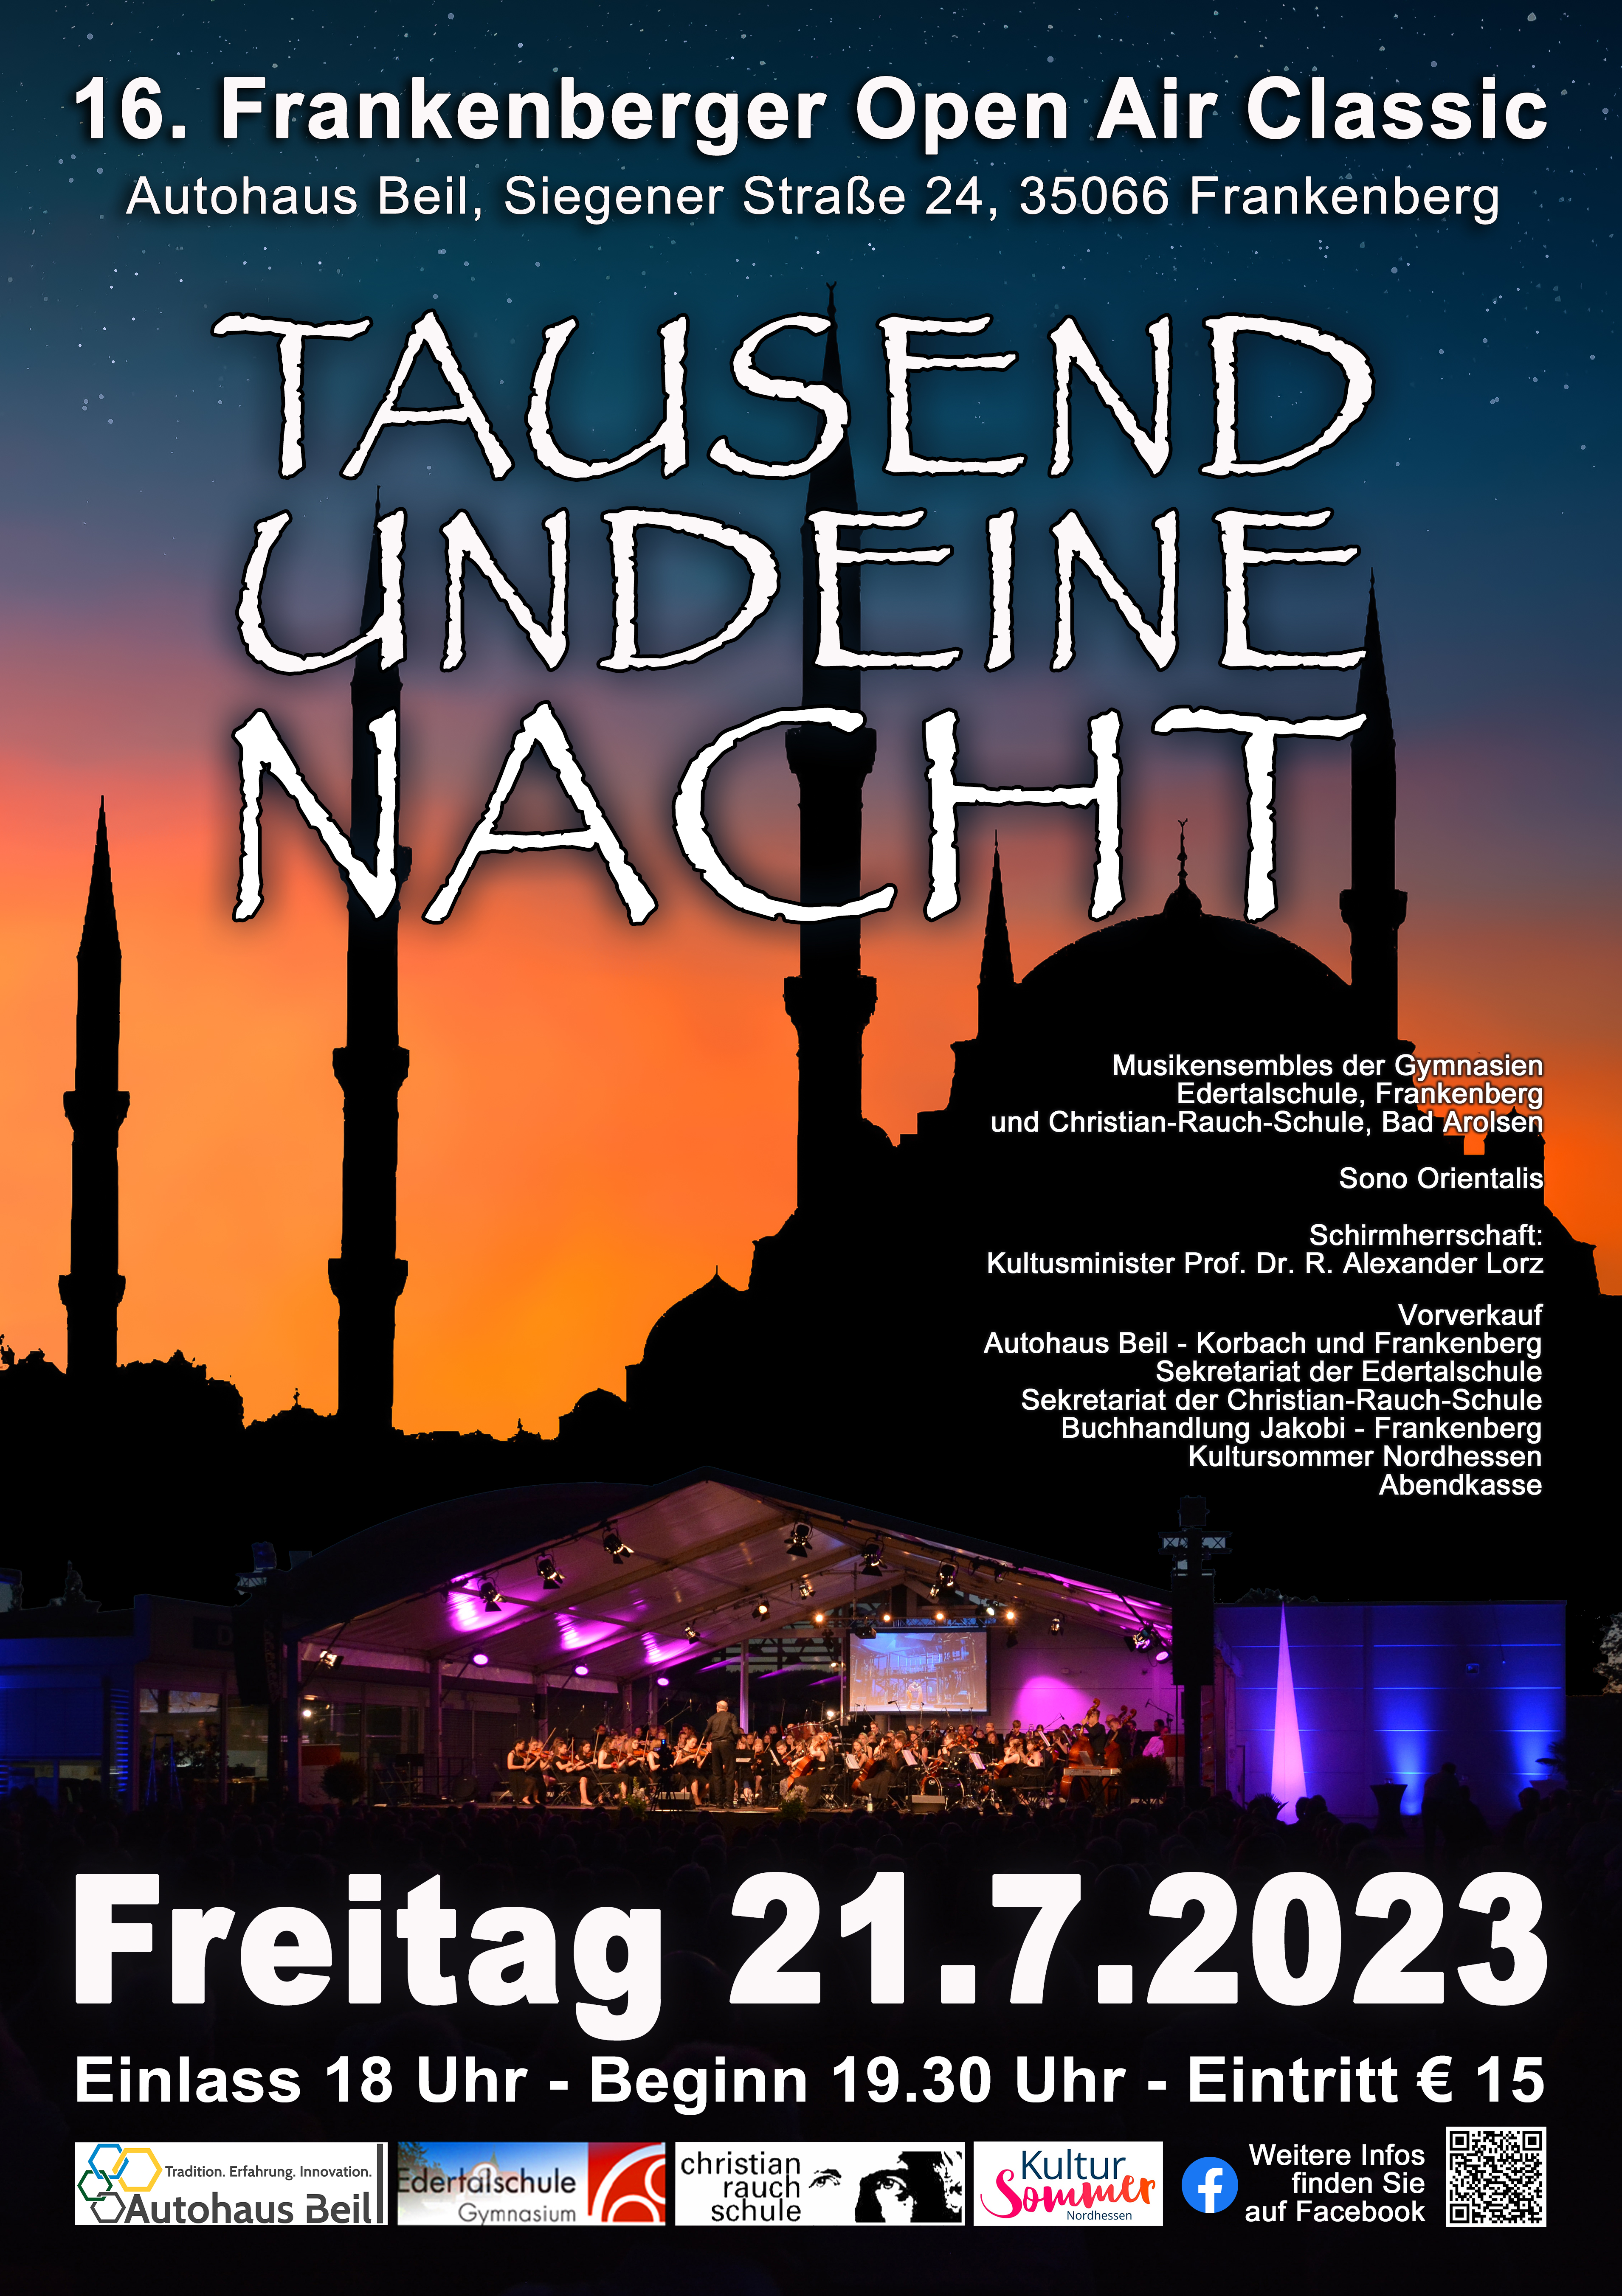 Plakat für das 16. Frankenberger Open Air Classic Konzert am 21.7.202